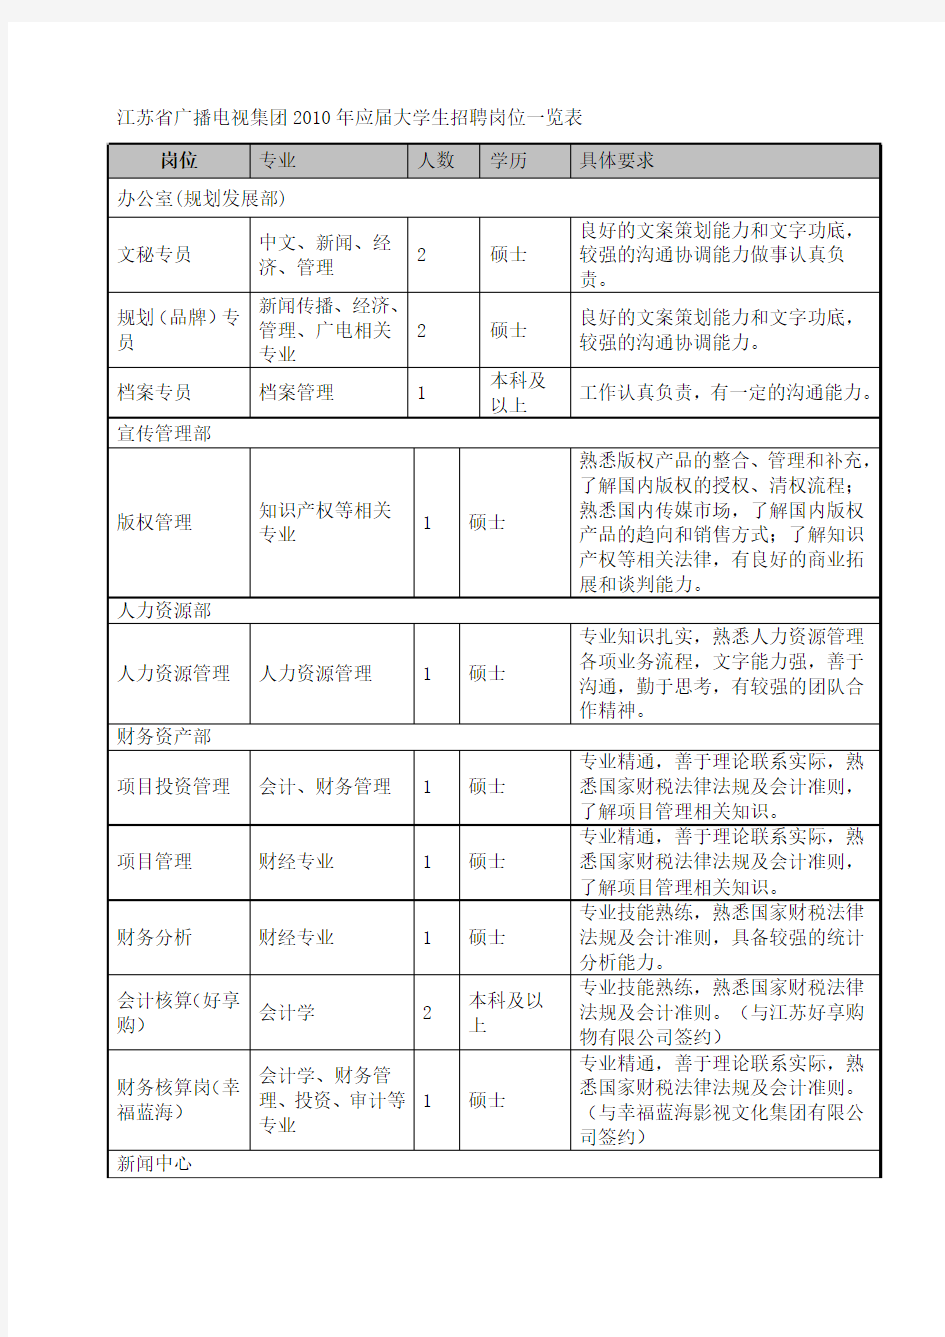 江苏省广播电视集团2010年应届大学生招聘岗位一览表